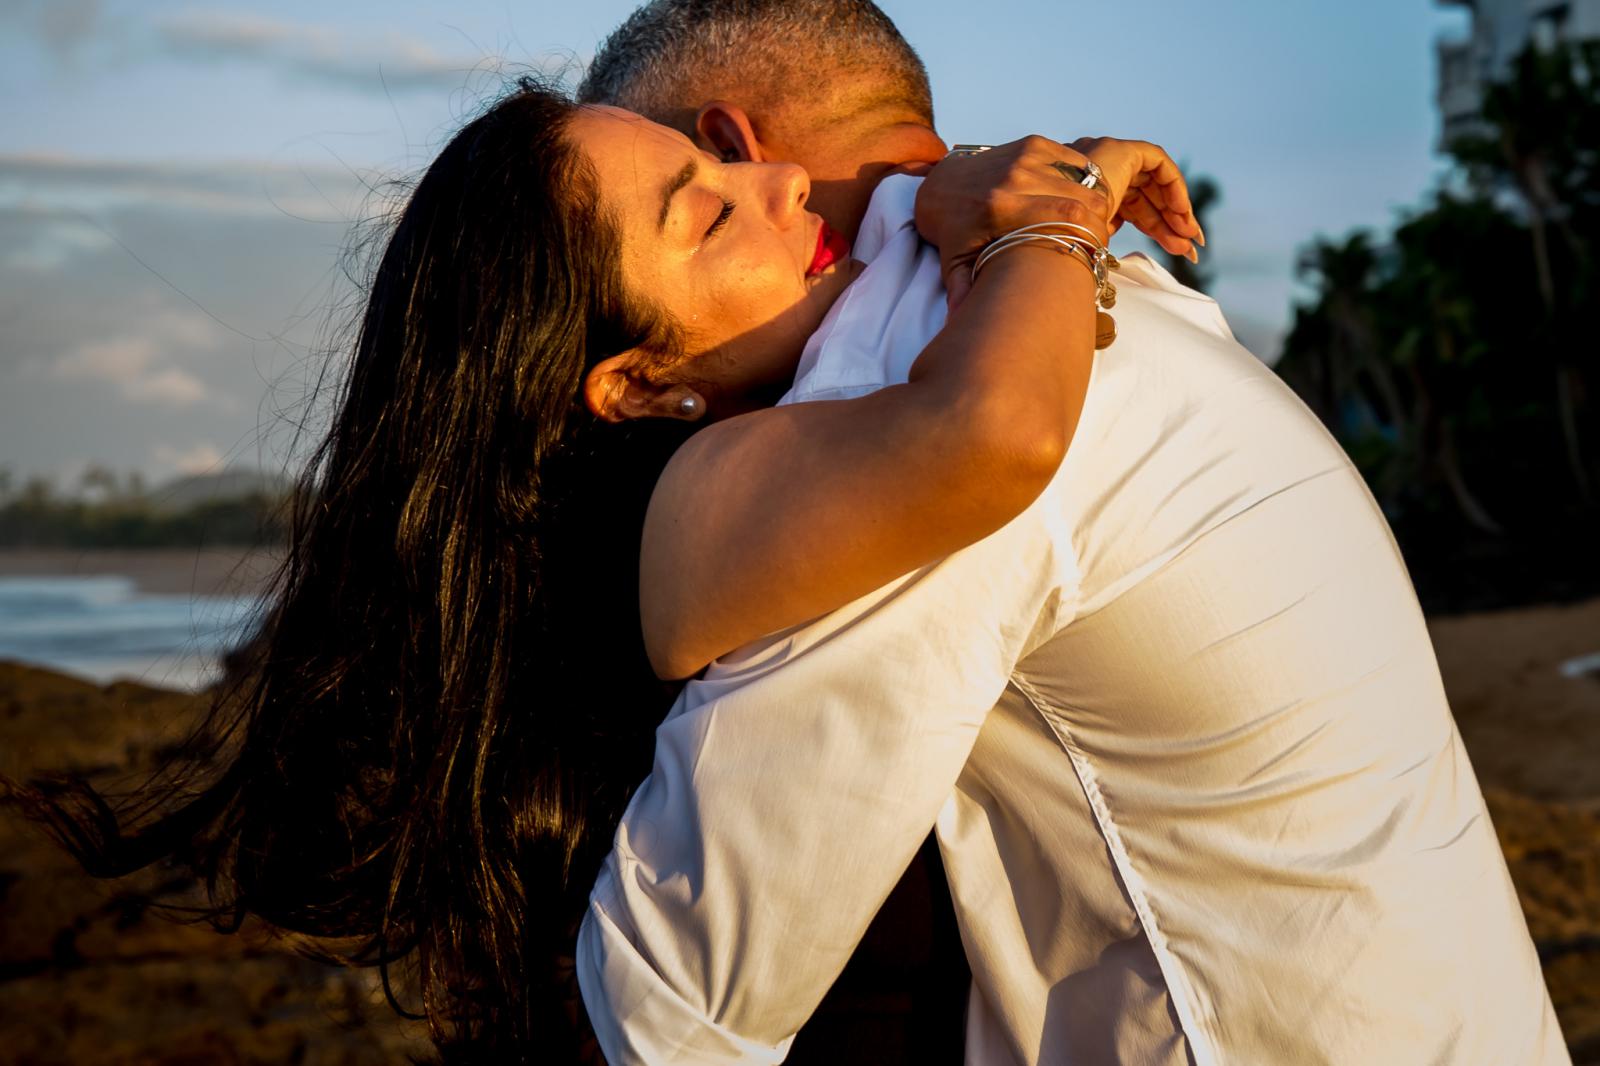 Huwelijksaanzoek strand in Puerto Rico door bruidsfotograaf Den Haag